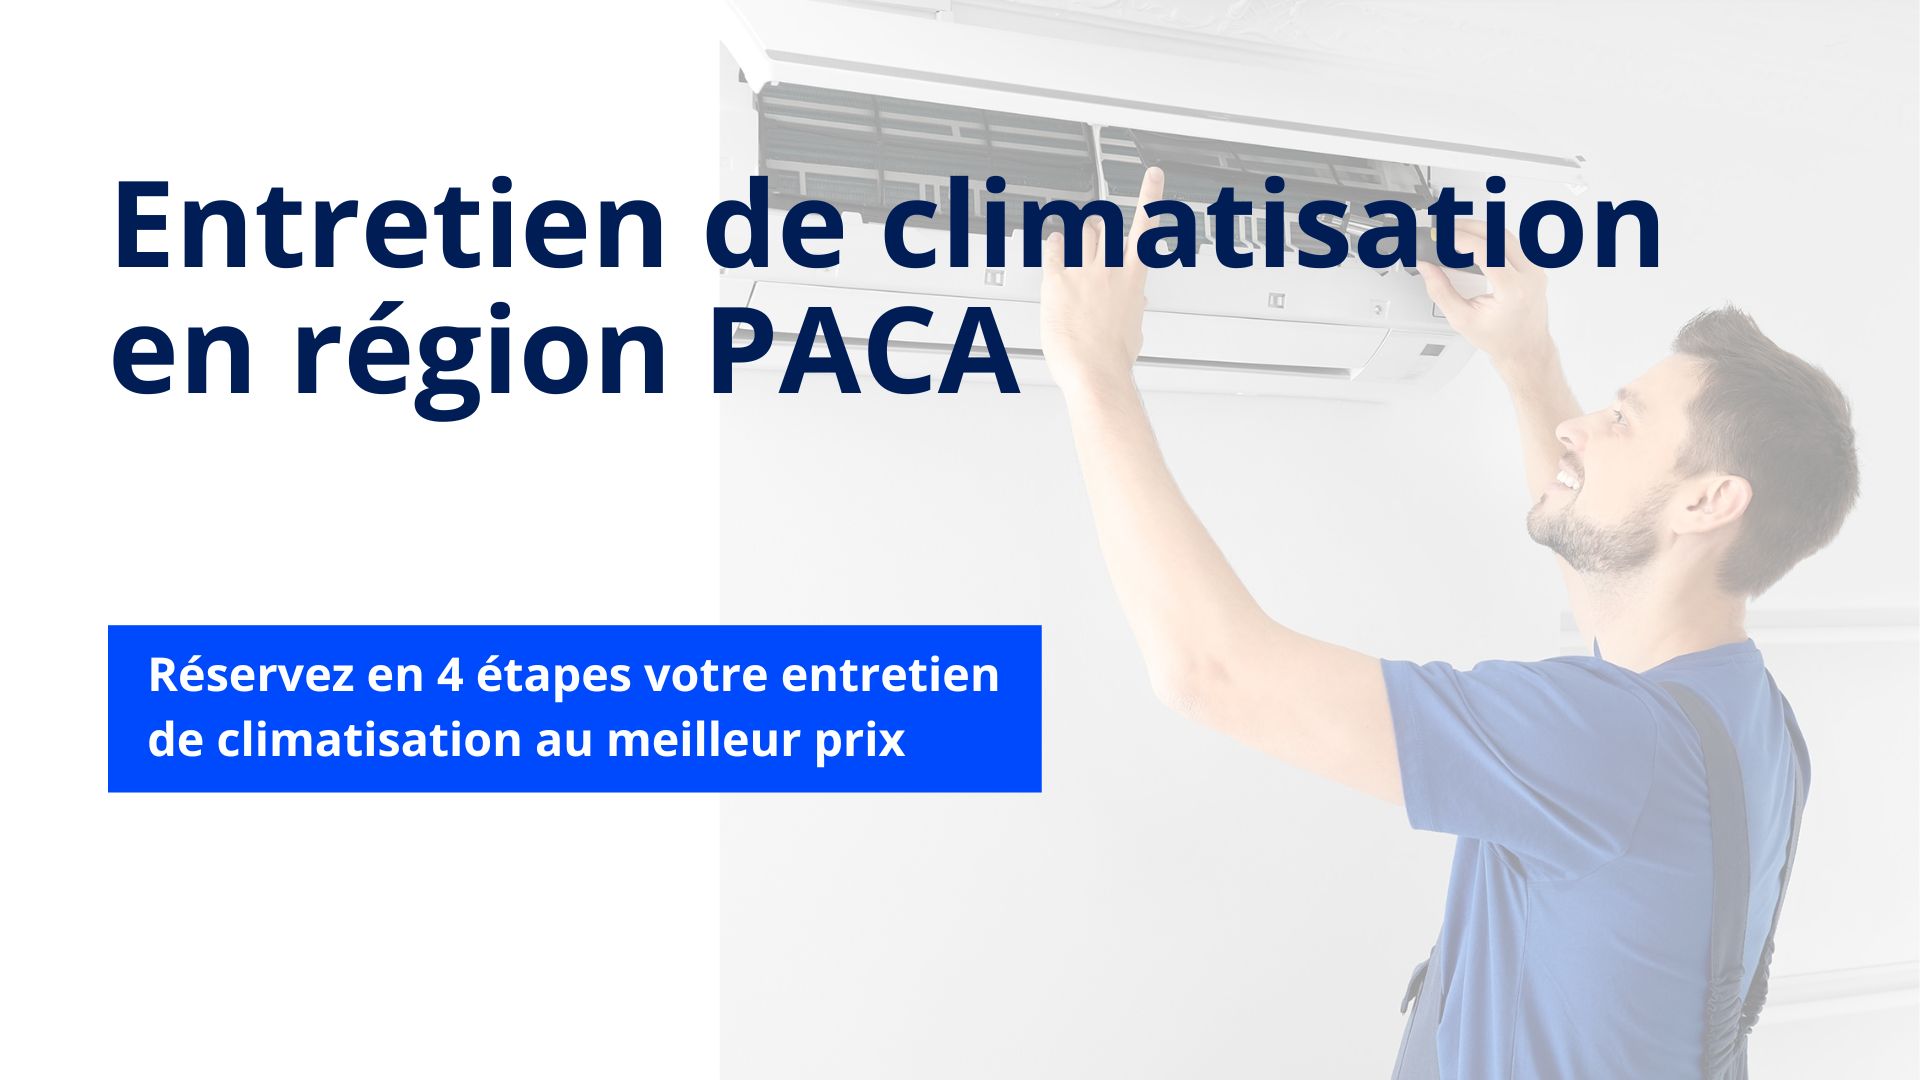 Entretien climatisation en région PACA